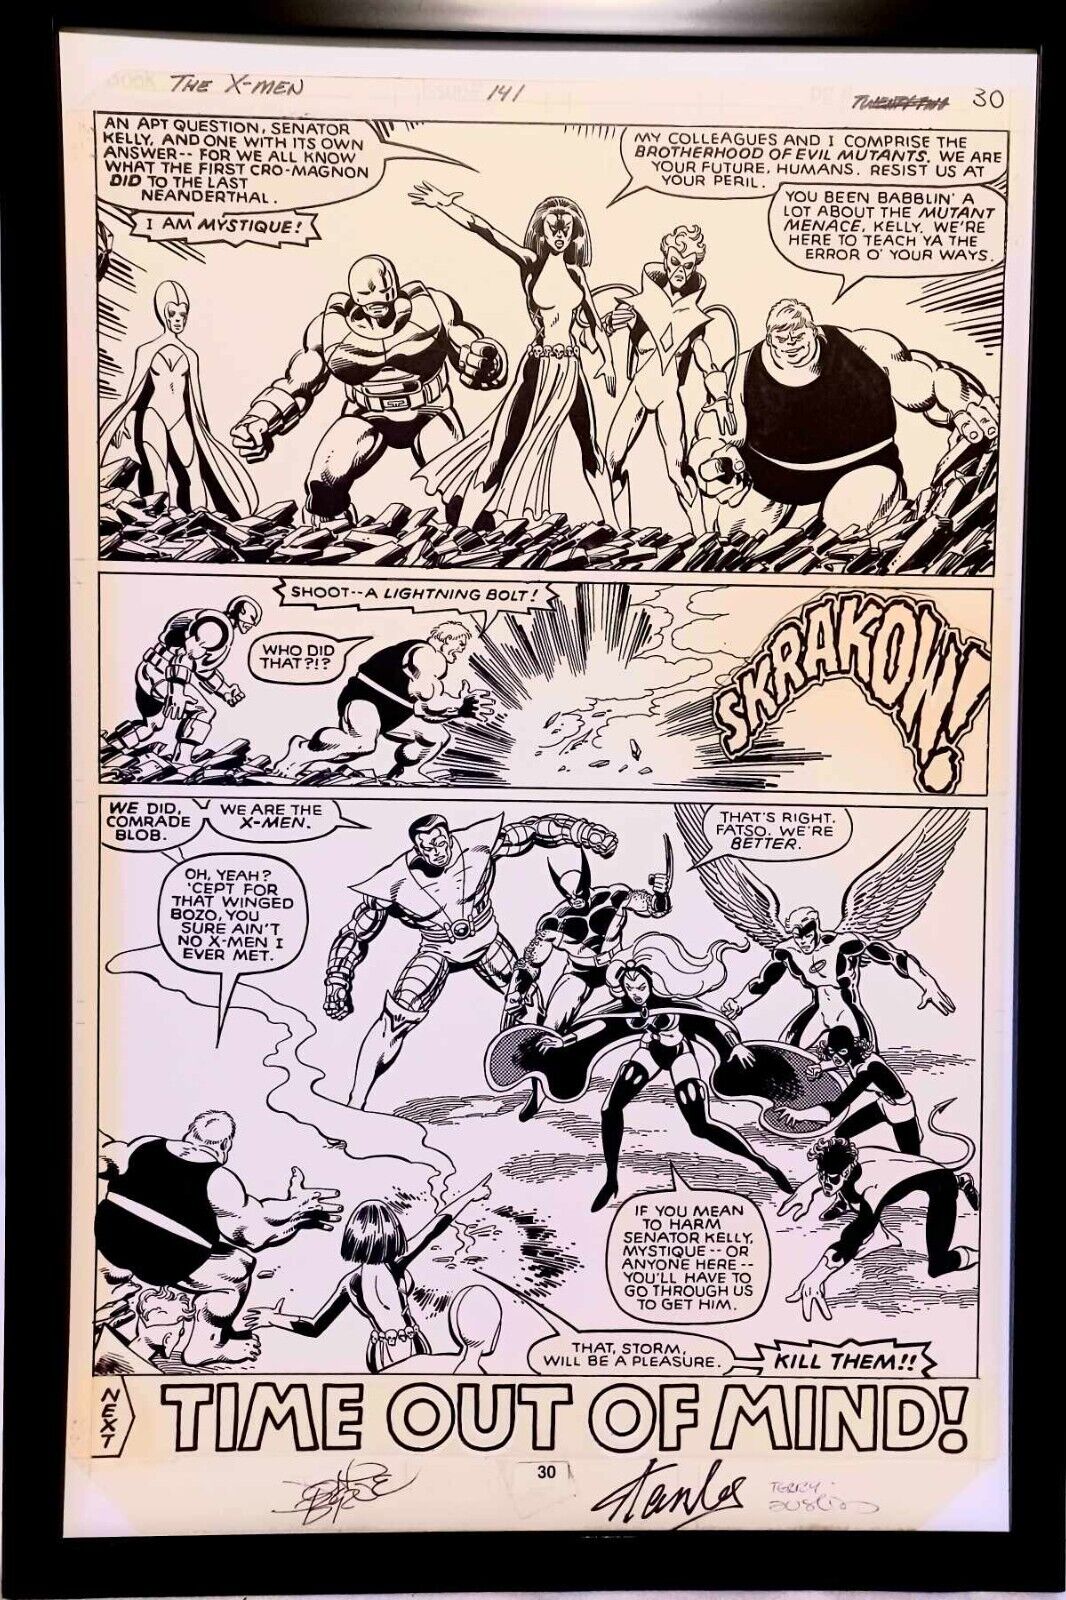 Uncanny X-Men #141 pg. 30 by John Byrne 11x17 FRAMED Original Art Print Poster